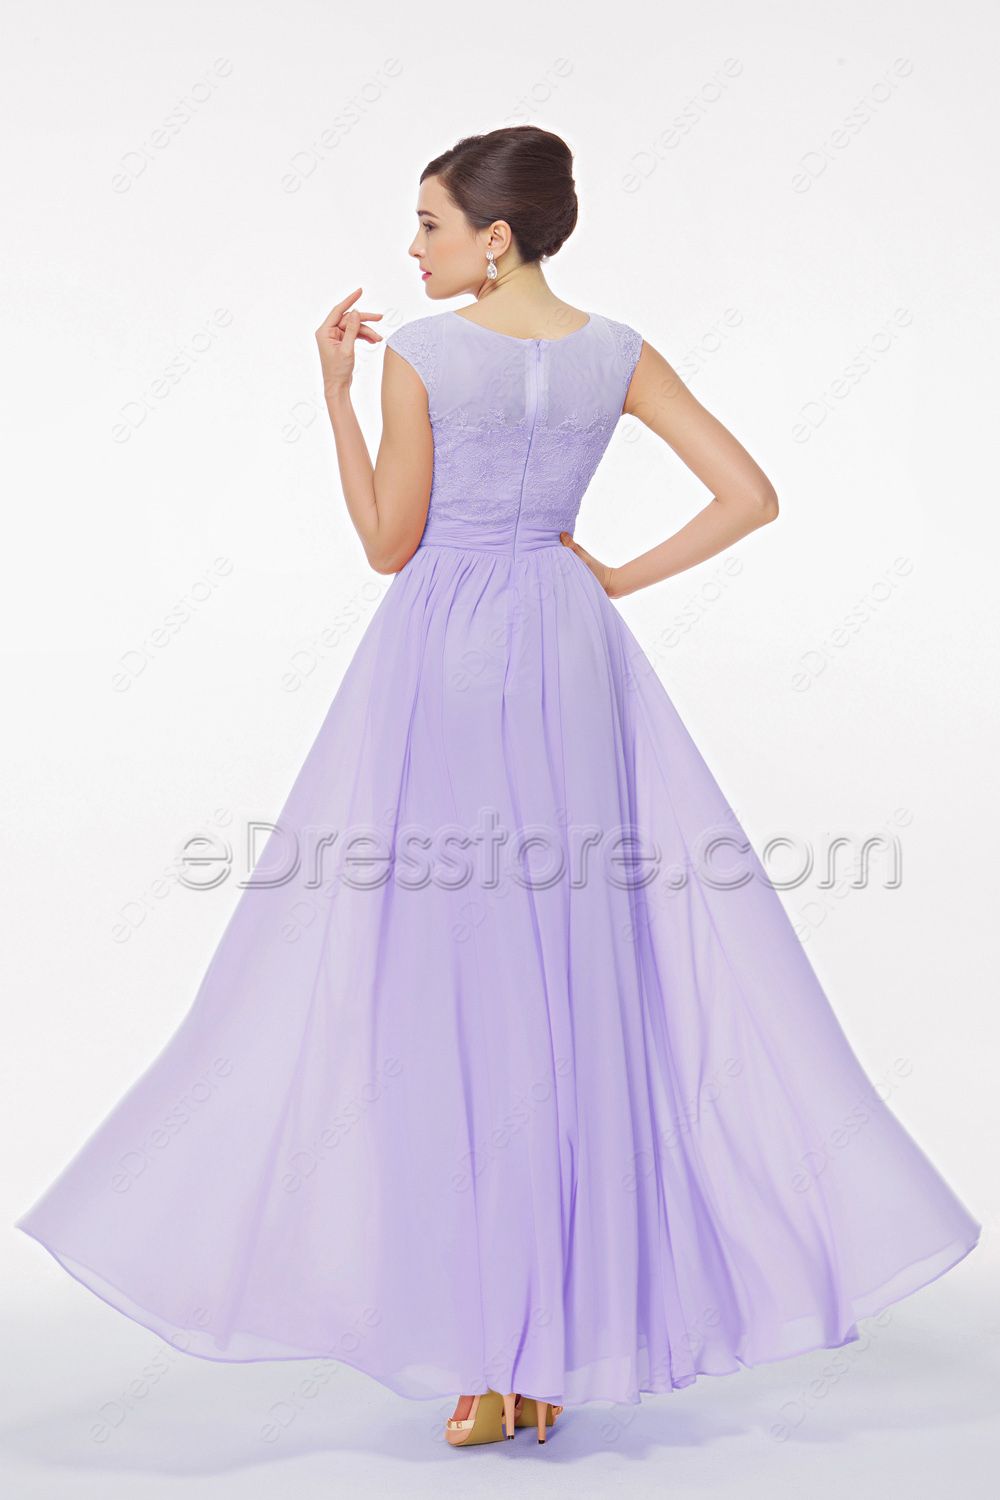 Modest Lavender Formal Dresses for Wedding | eDresstore